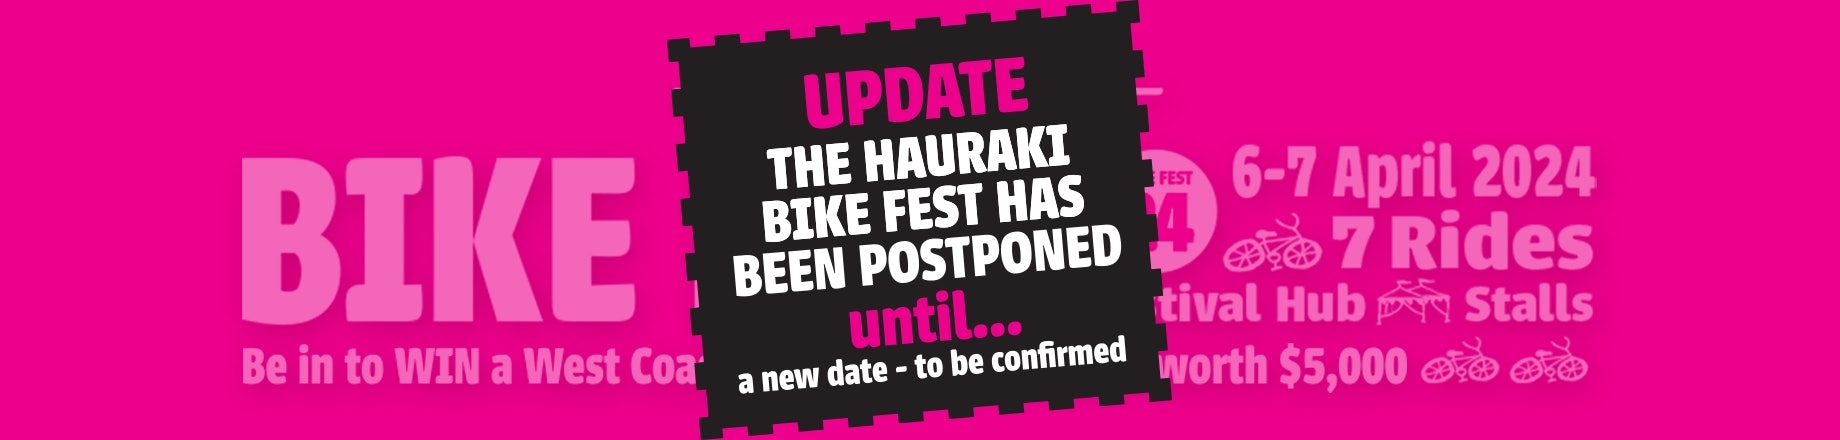 Hauraki Bike Fest